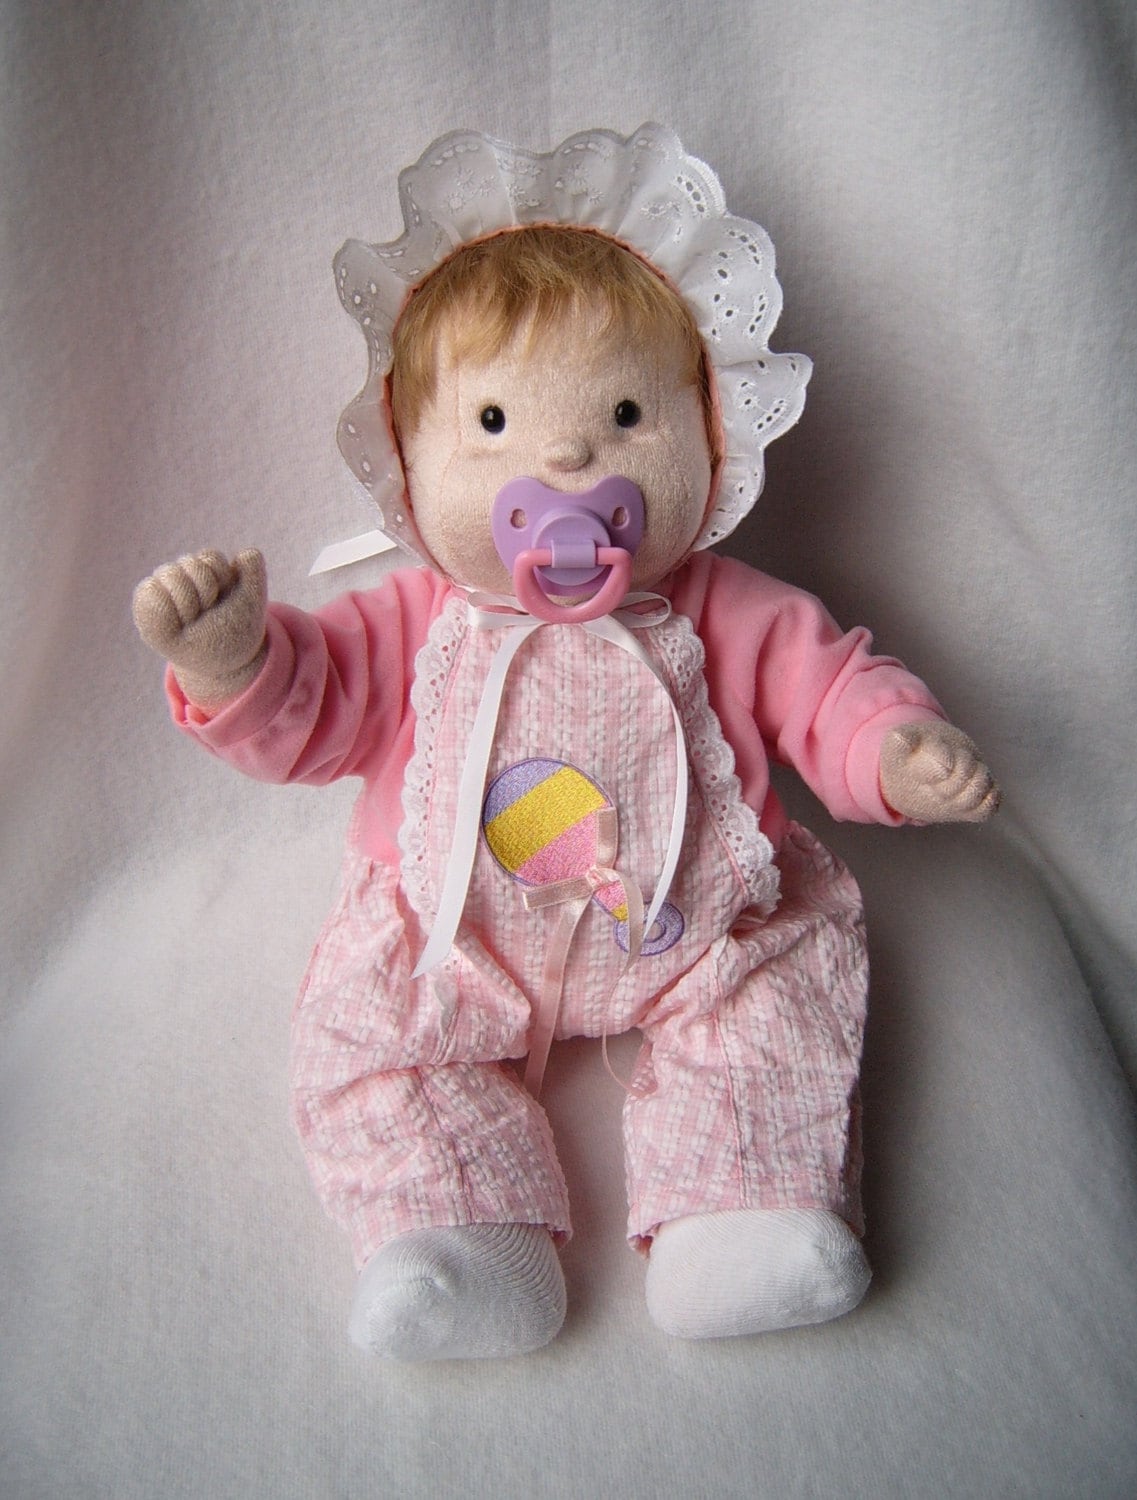 Soft Cloth Baby Dolls